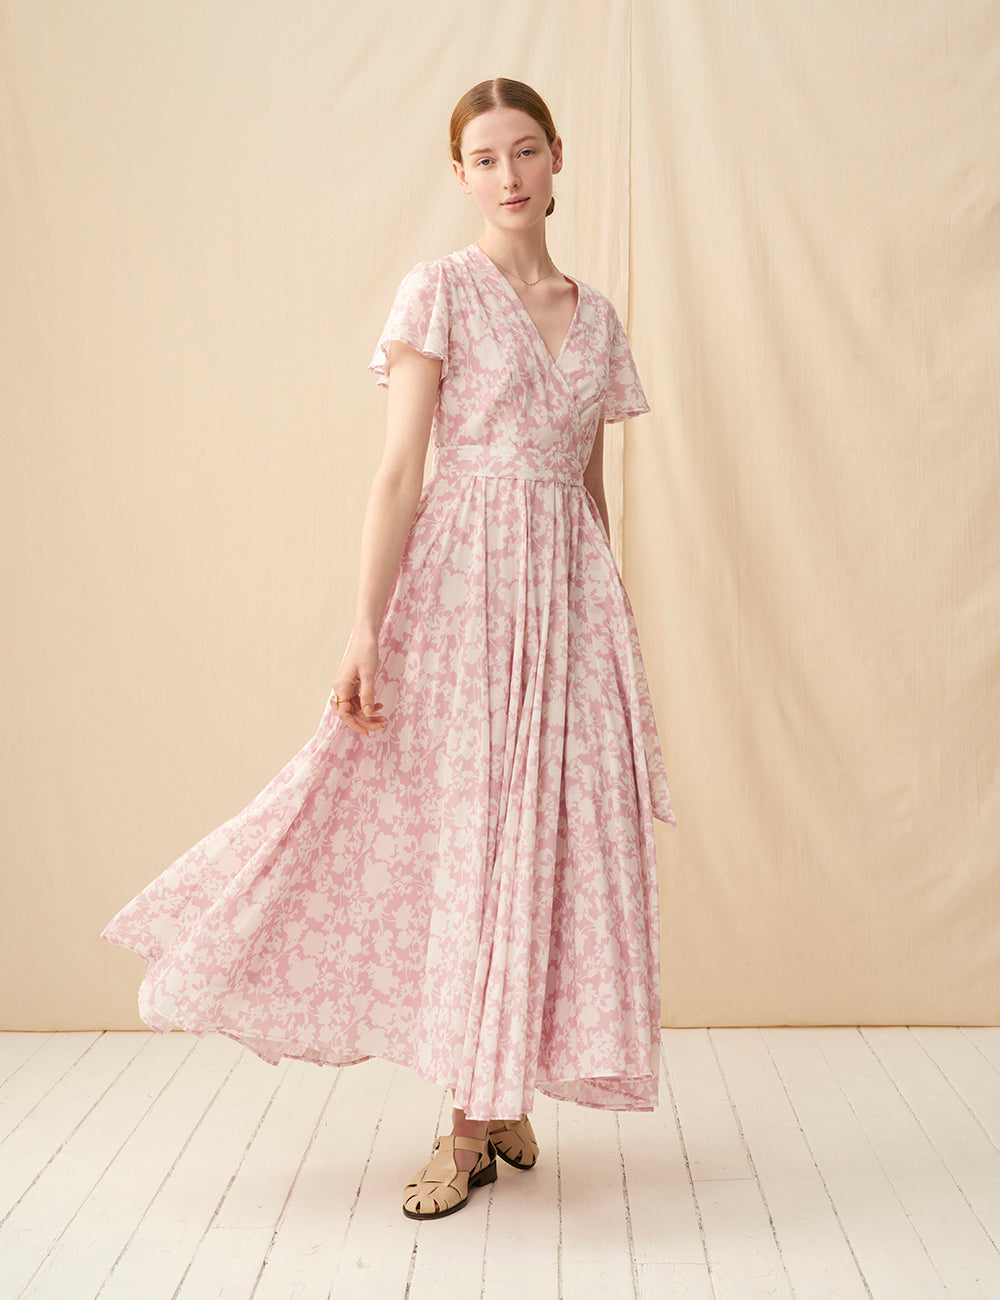 マドモアゼルのドレス(半袖) Garden Shadows/Pink